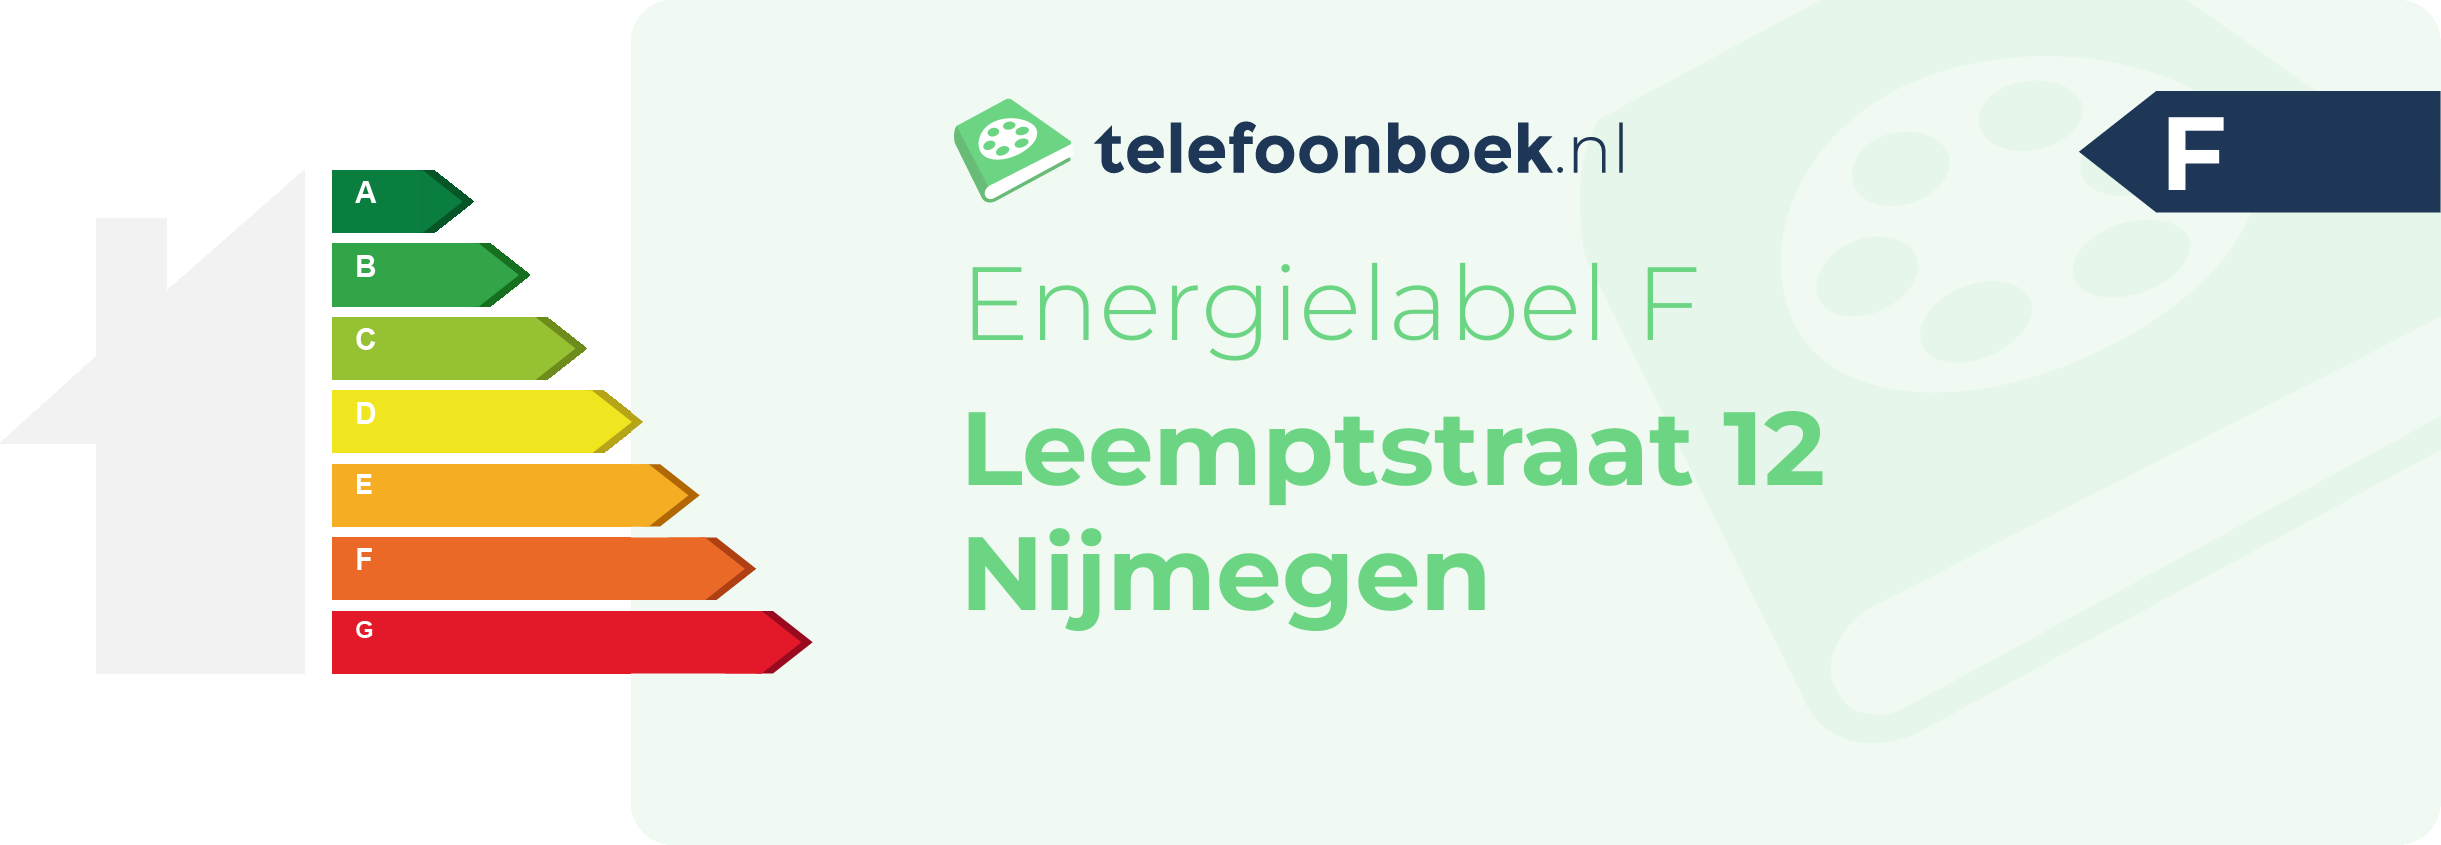 Energielabel Leemptstraat 12 Nijmegen